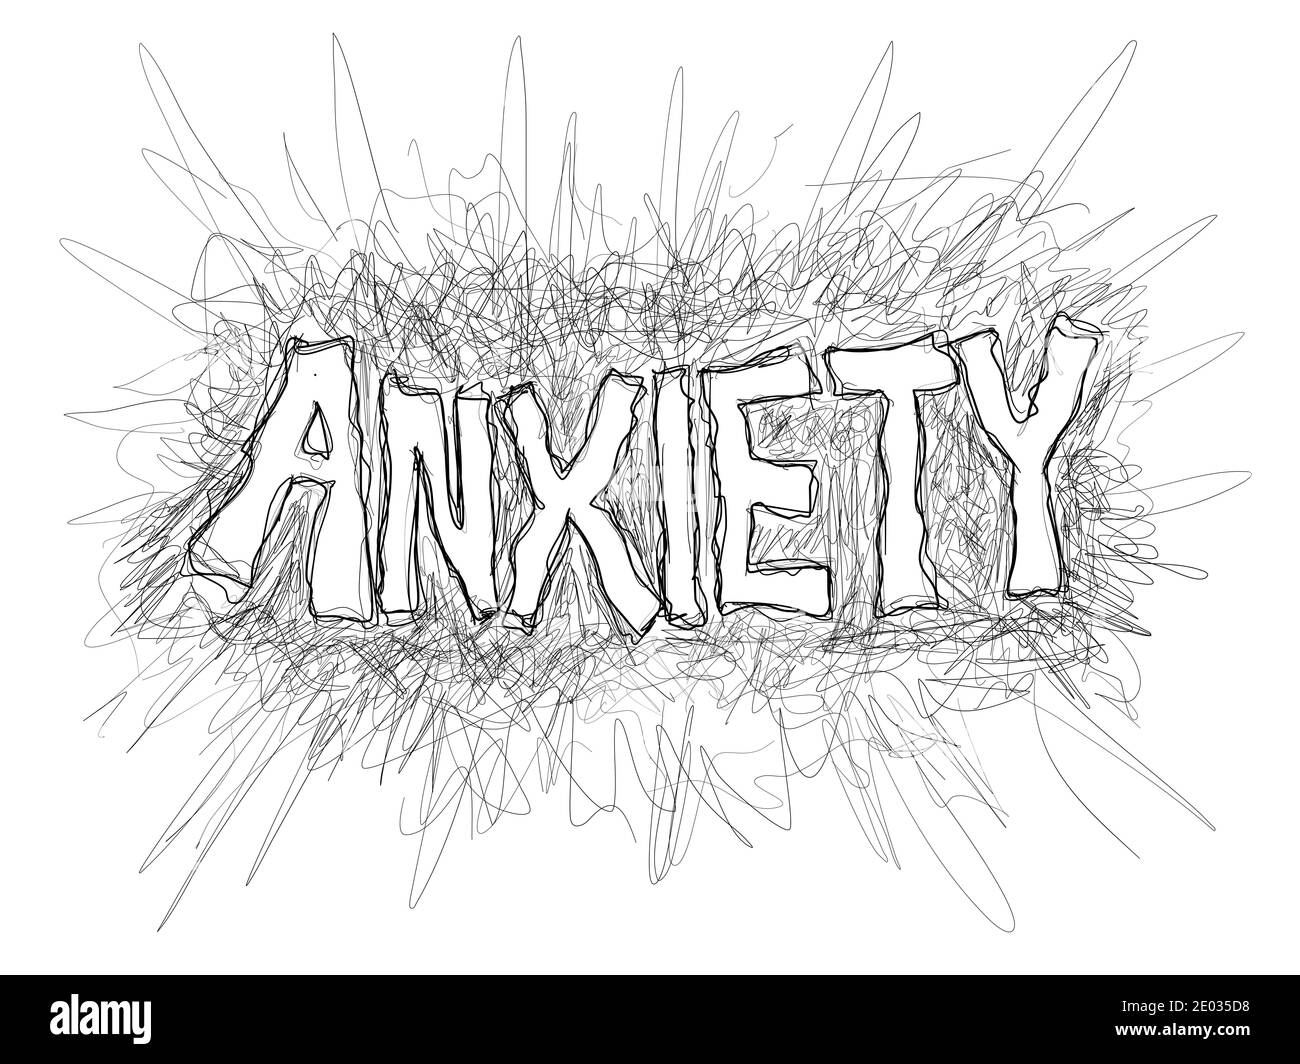 Angst - psychische Störung der Angst, Angst, Sorge und Unbehagen. Handgeschriebene Illustration - wackelig robuste hadwritting. Stockfoto